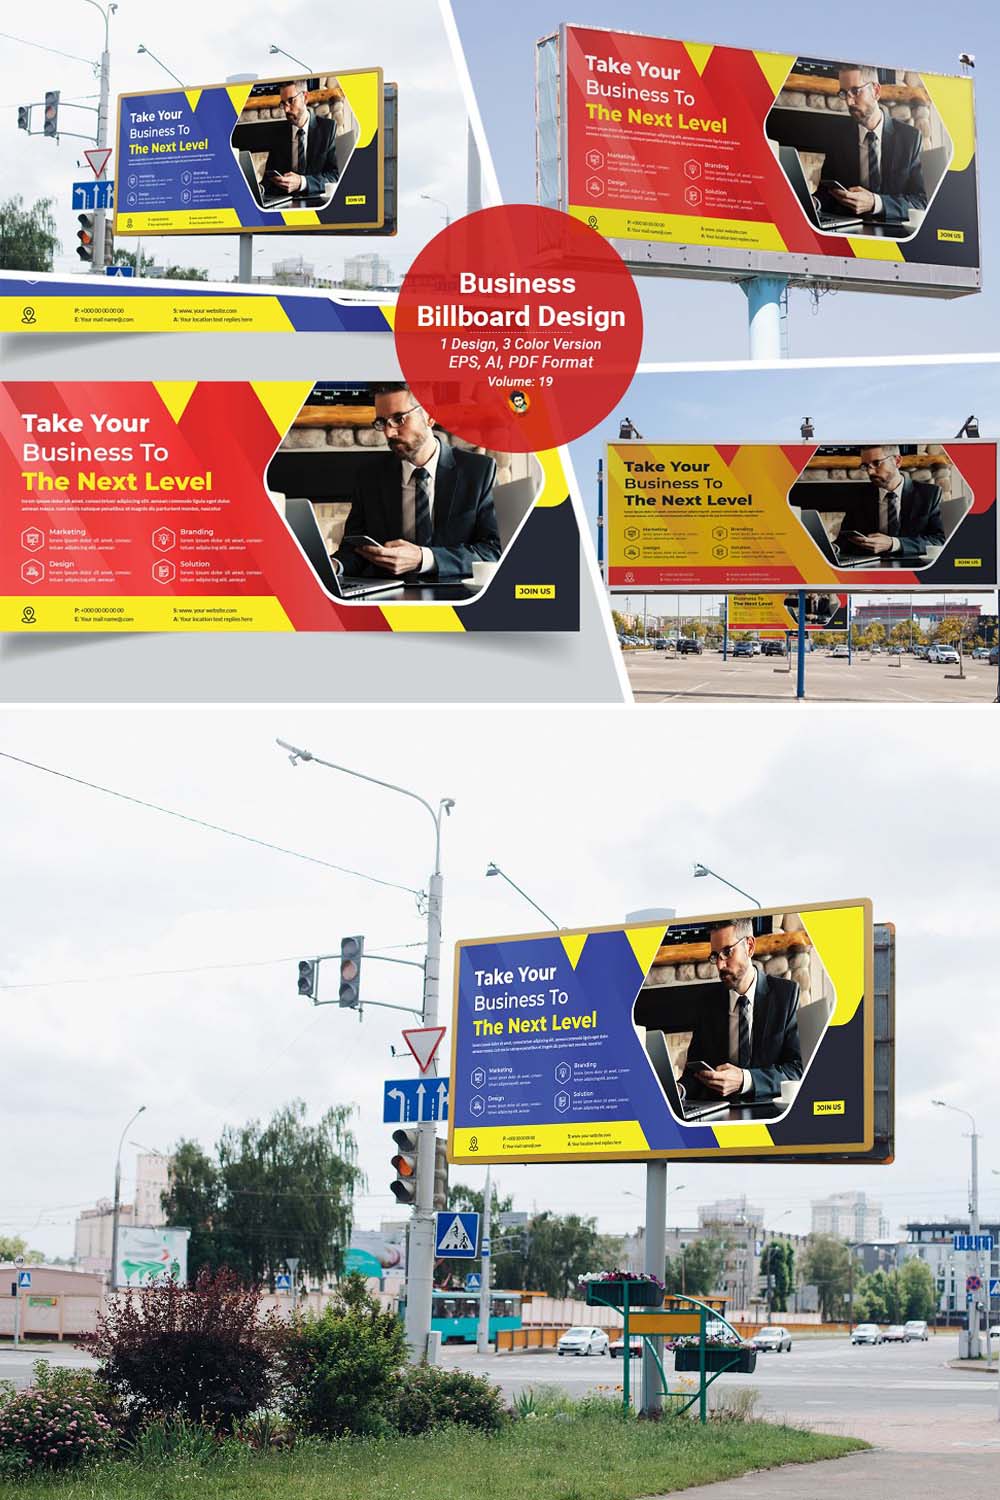 Business Billboard Design Template V-19 pinterest preview image.